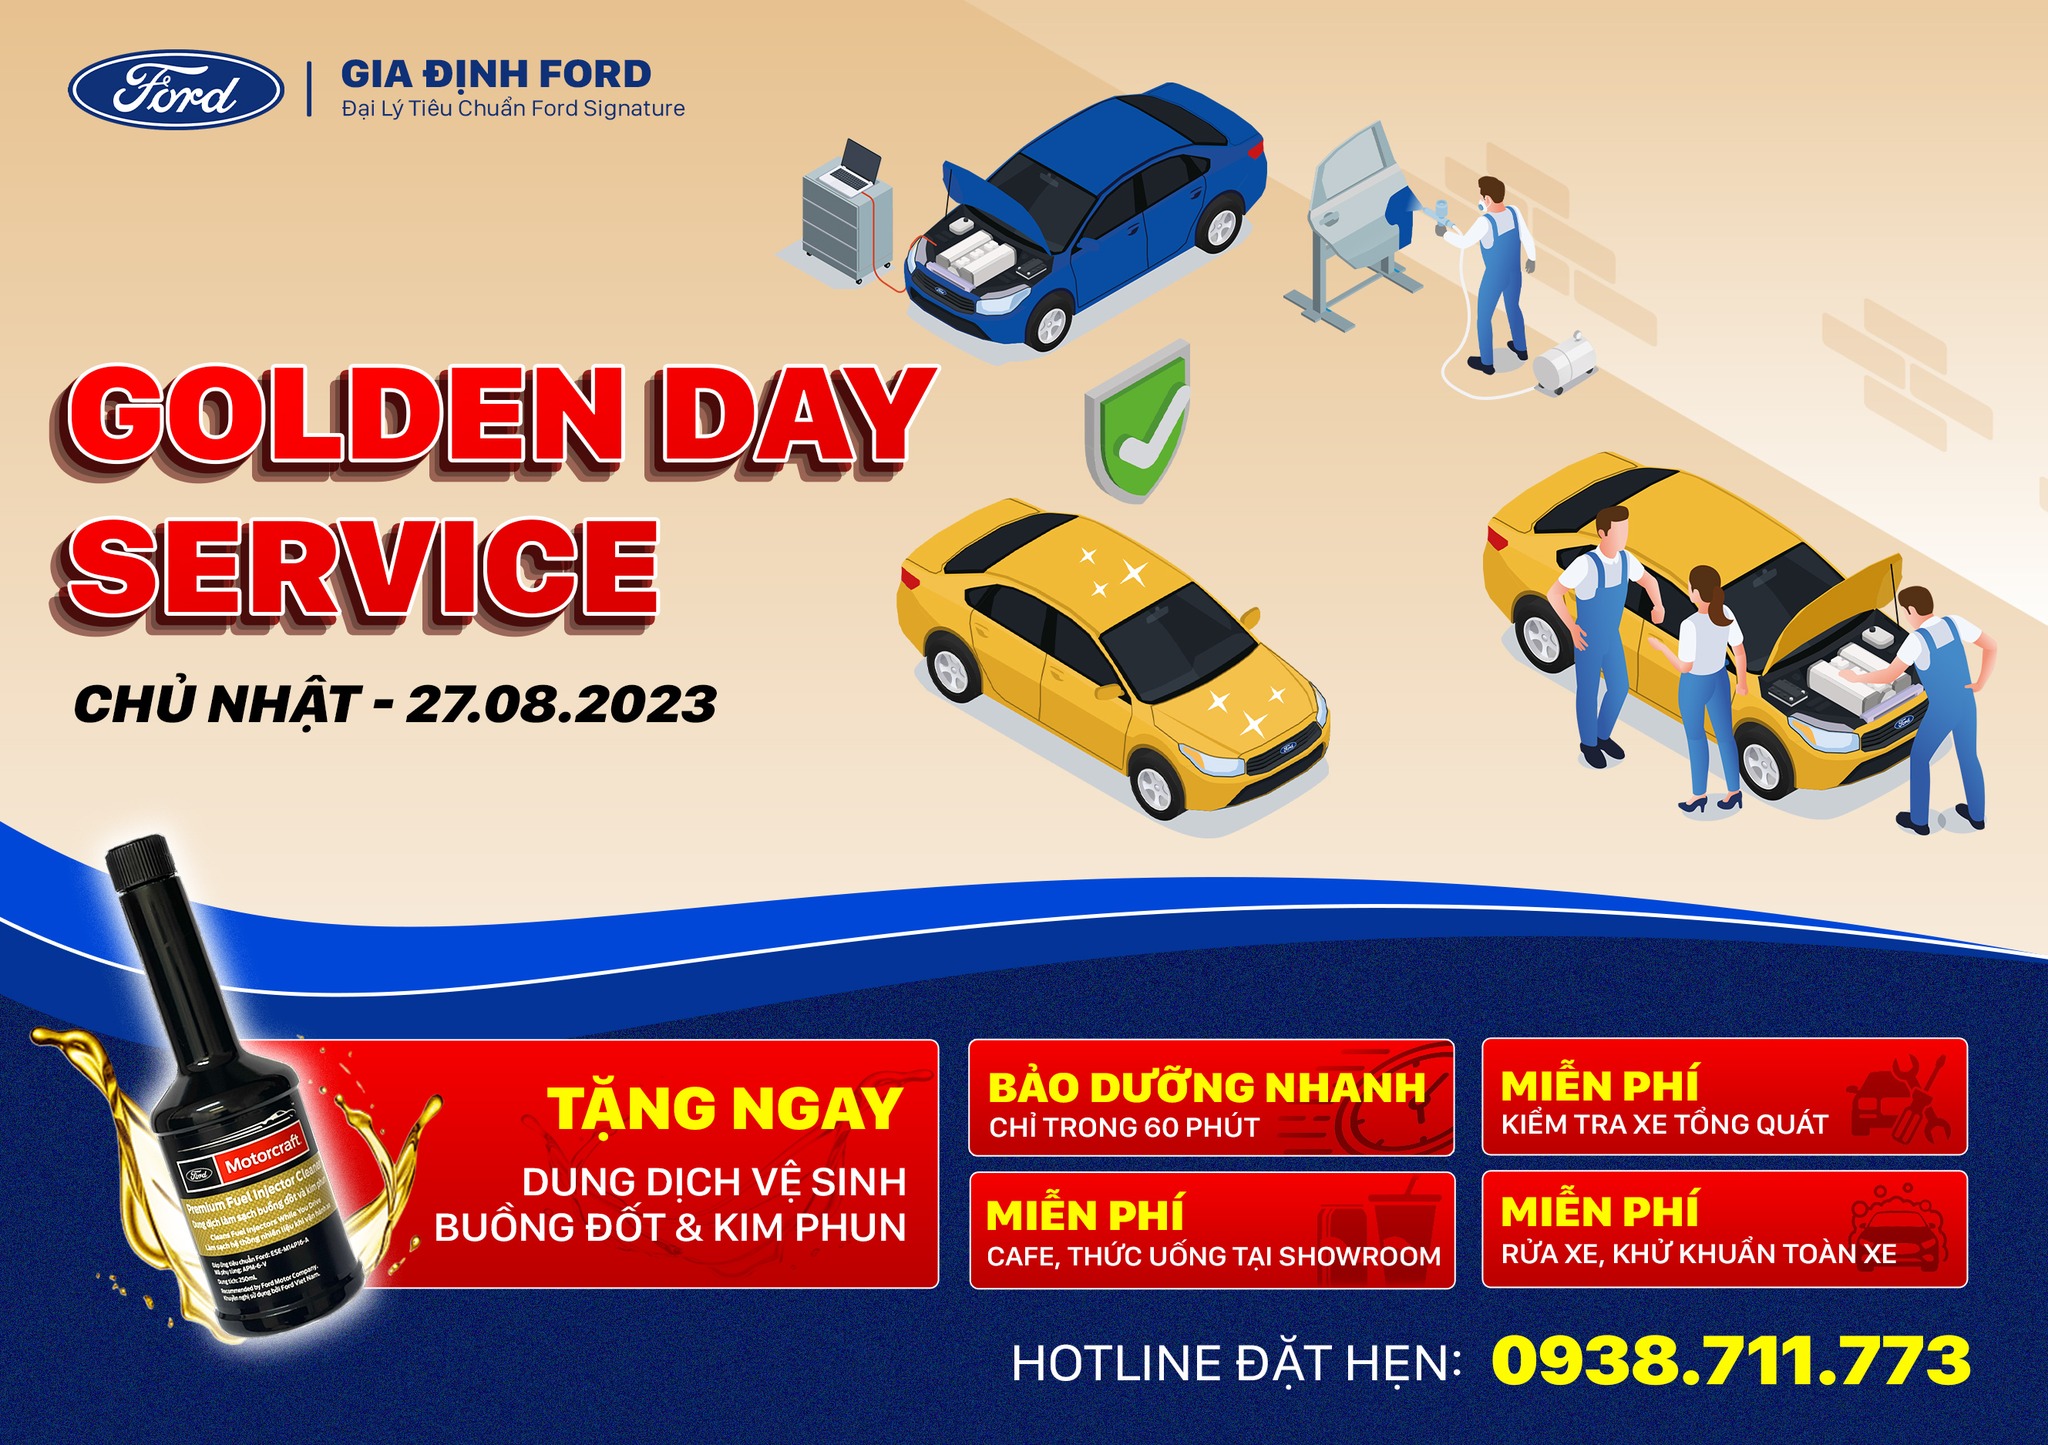 Golden Day Service – Ngày vàng dịch vụ | Gia Định Ford